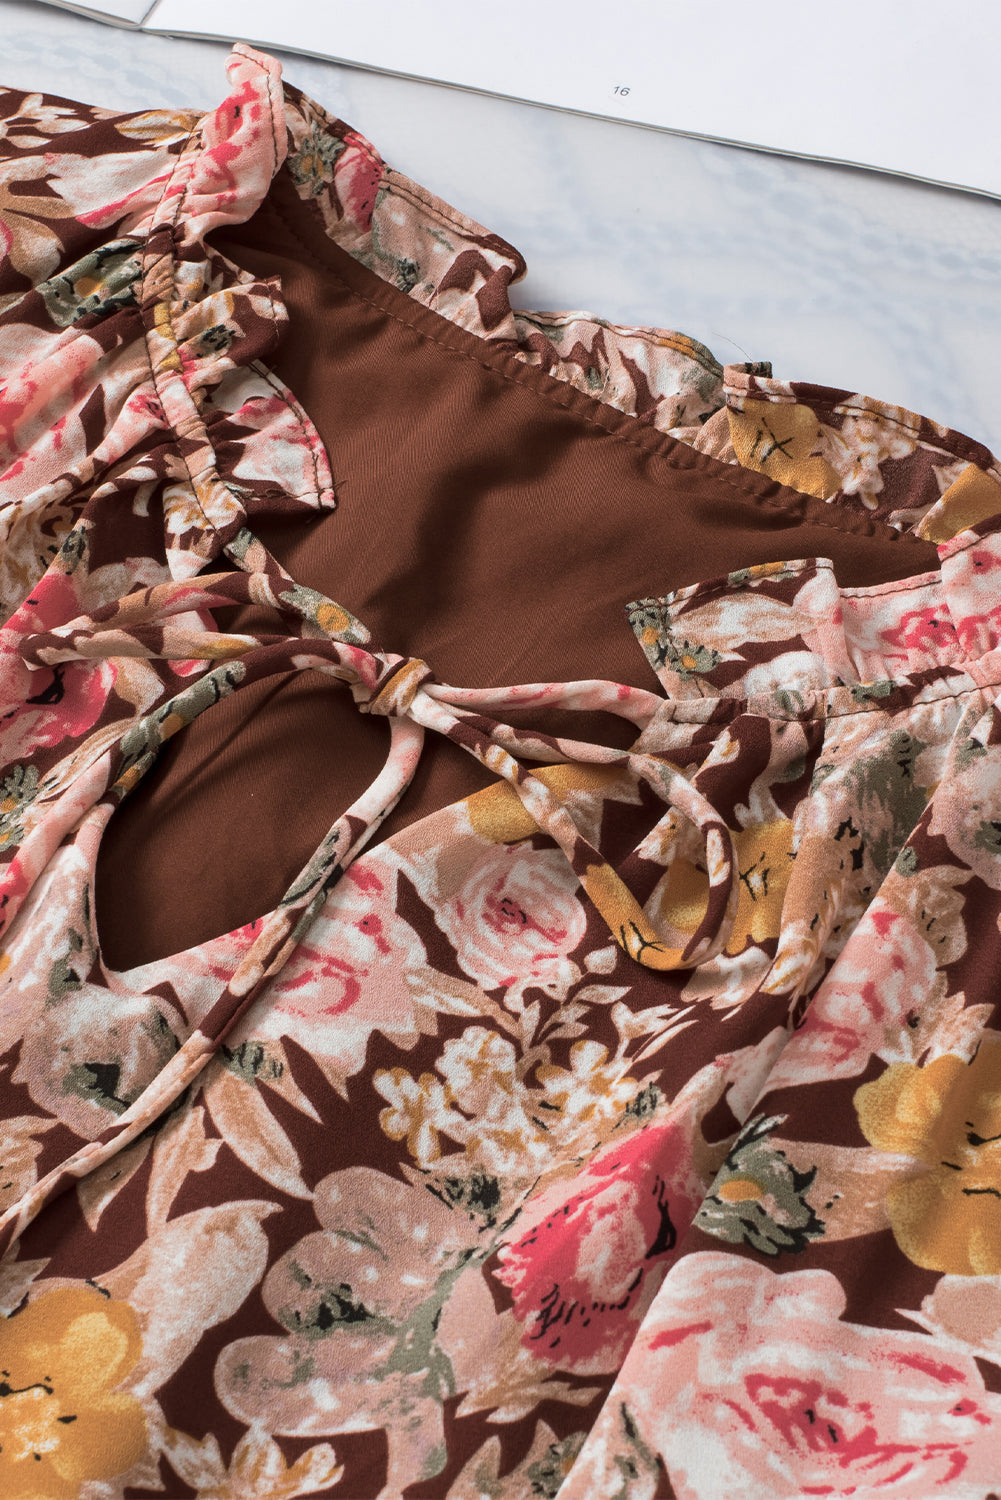 Rožnata bluza z razcepljenim ovratnikom s cvetličnim vzorcem